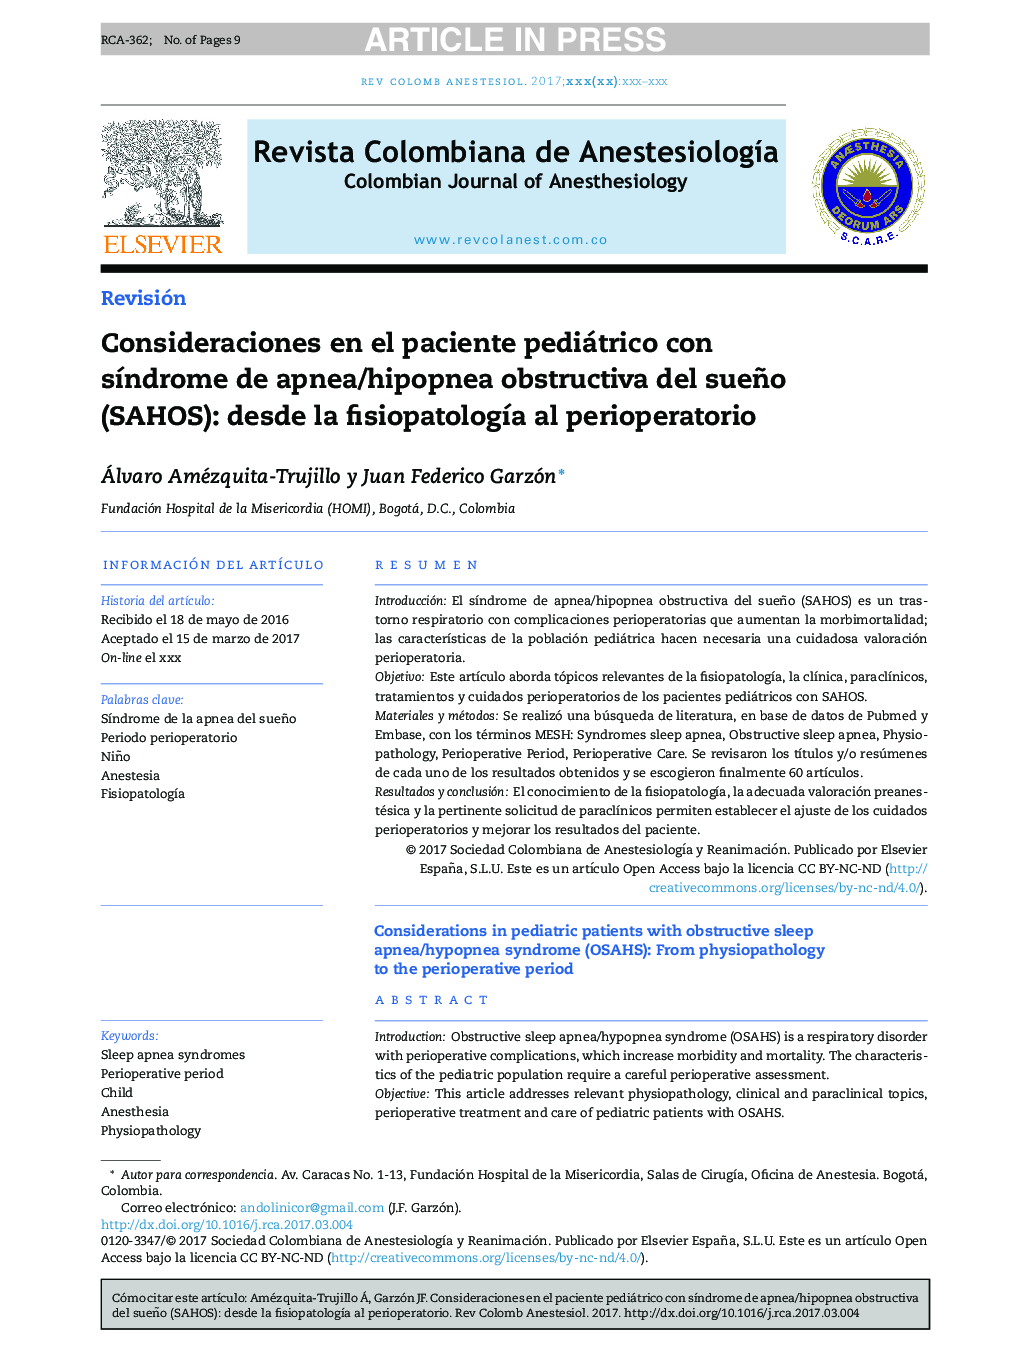 Consideraciones en el paciente pediátrico con sÃ­ndrome de apnea/hipopnea obstructiva del sueño (SAHOS): desde la fisiopatologÃ­a al perioperatorio